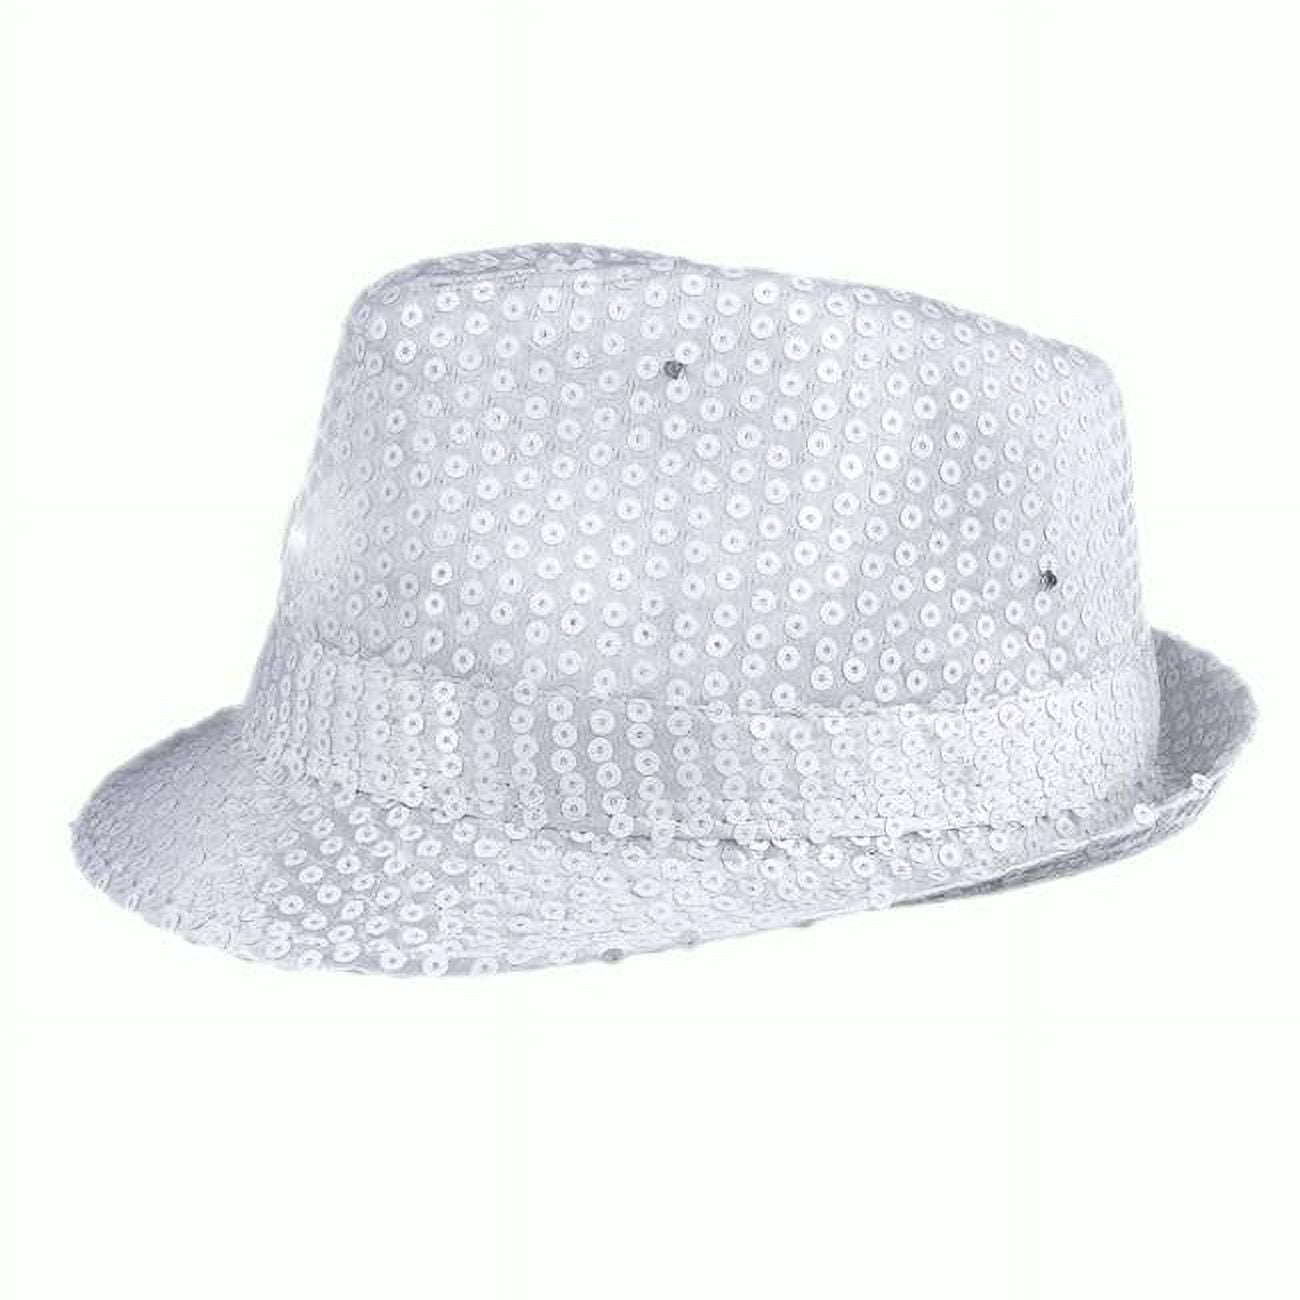 blinkee 3995447 Light Up LED Flashing Fedora Hat with Sequins&#44; White